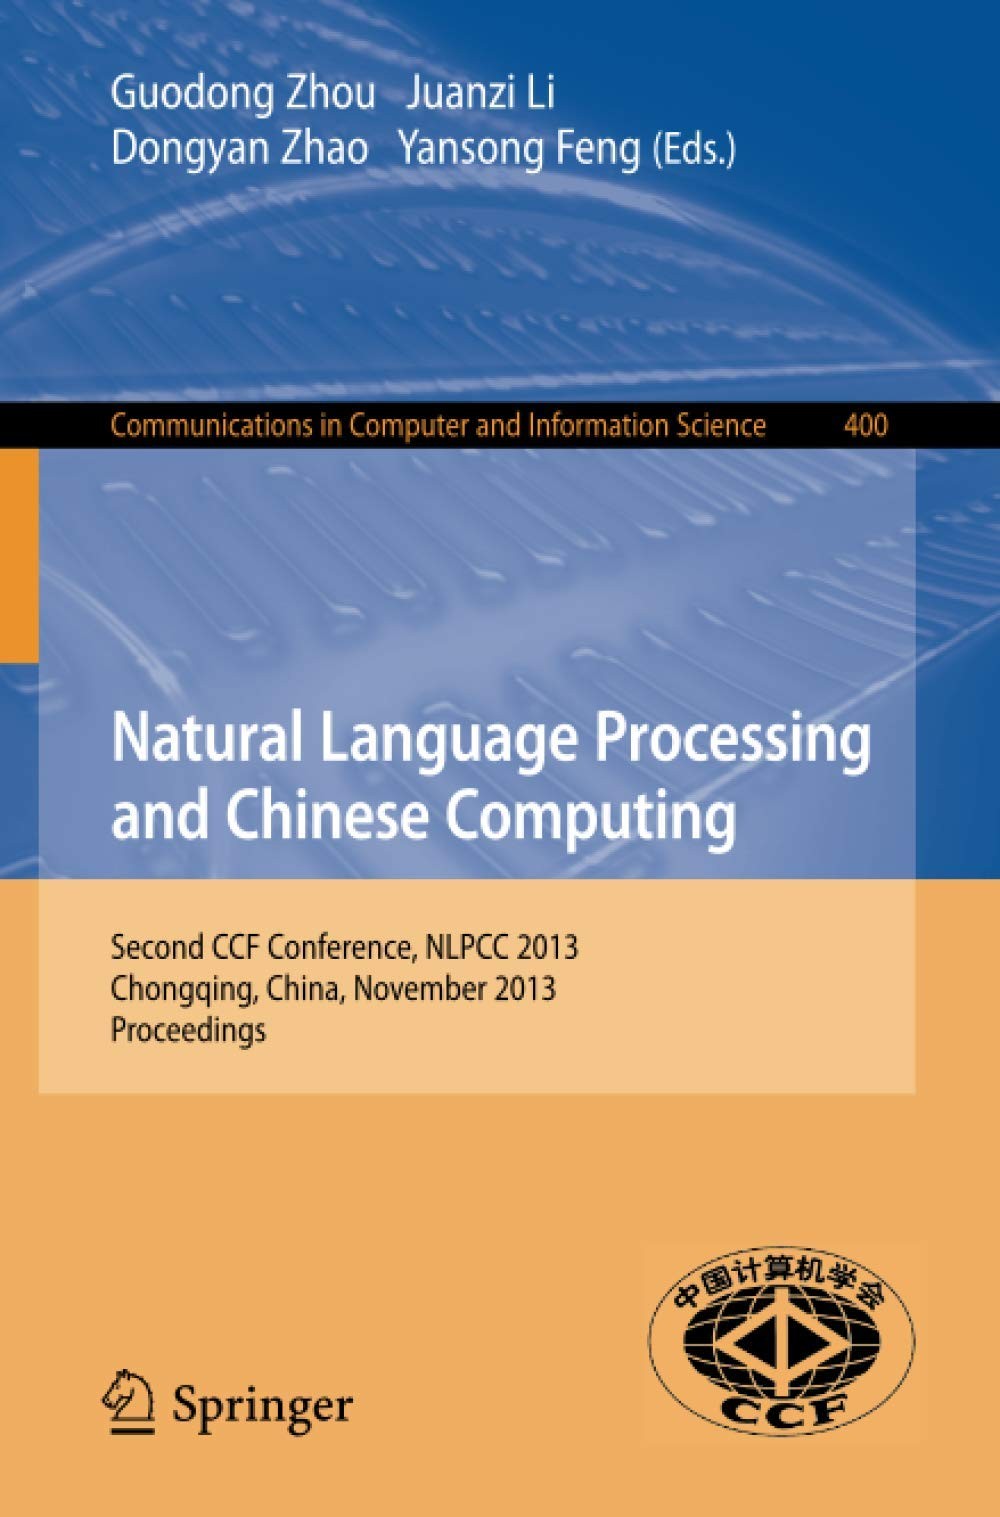 Natural Language Processing and Chinese Computing: Second CCF Conference, NLPCC 2013, Chongqing, China, November 15-19, 2013. Proceedings